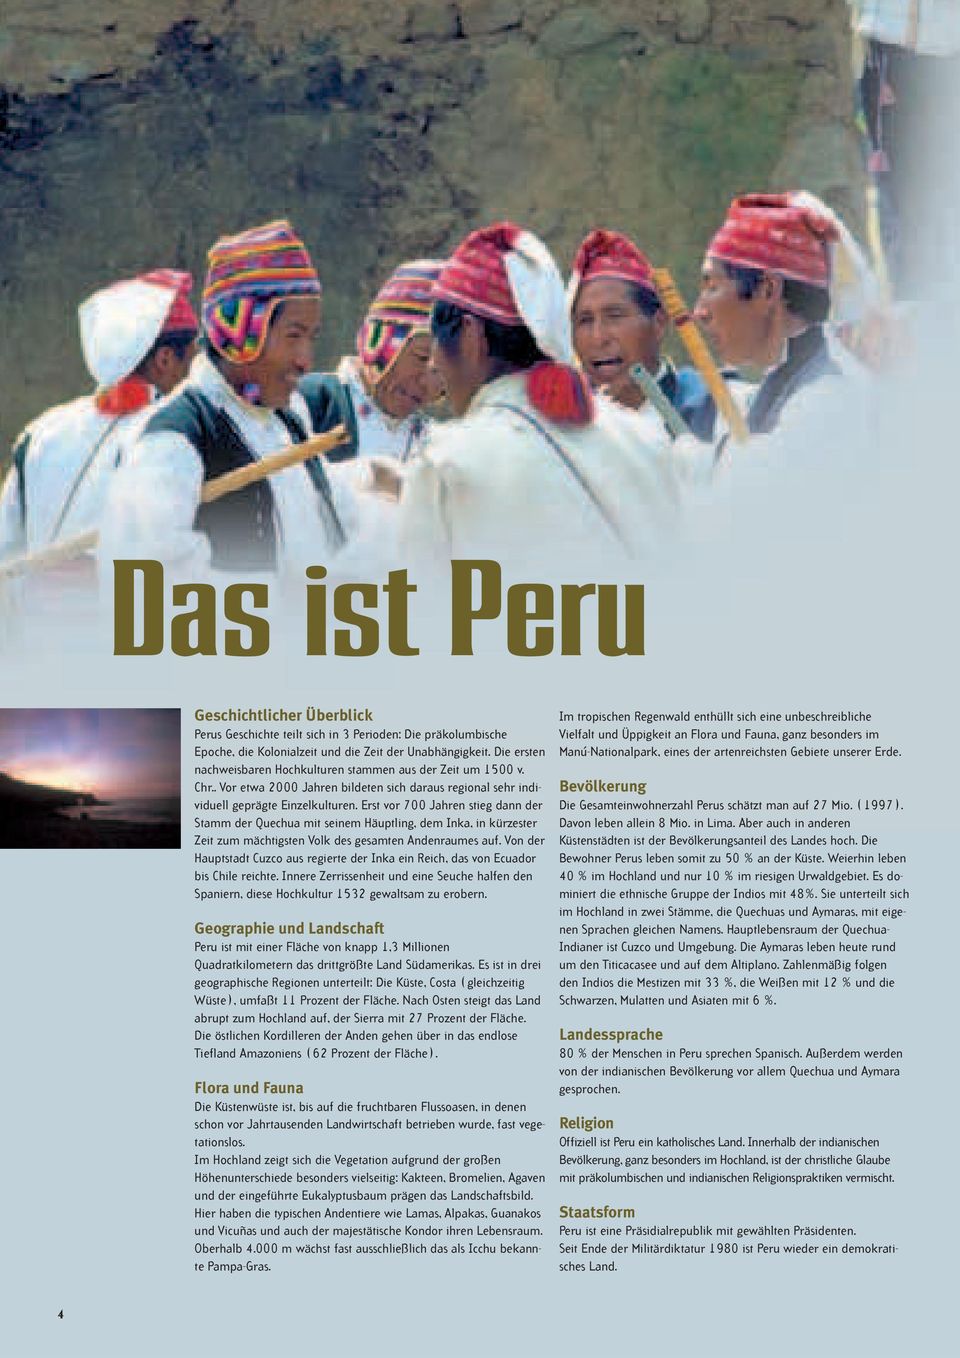 Erst vor 700 Jahren stieg dann der Stamm der Quechua mit seinem Häuptling, dem Inka, in kürzester Zeit zum mächtigsten Volk des gesamten Andenraumes auf.